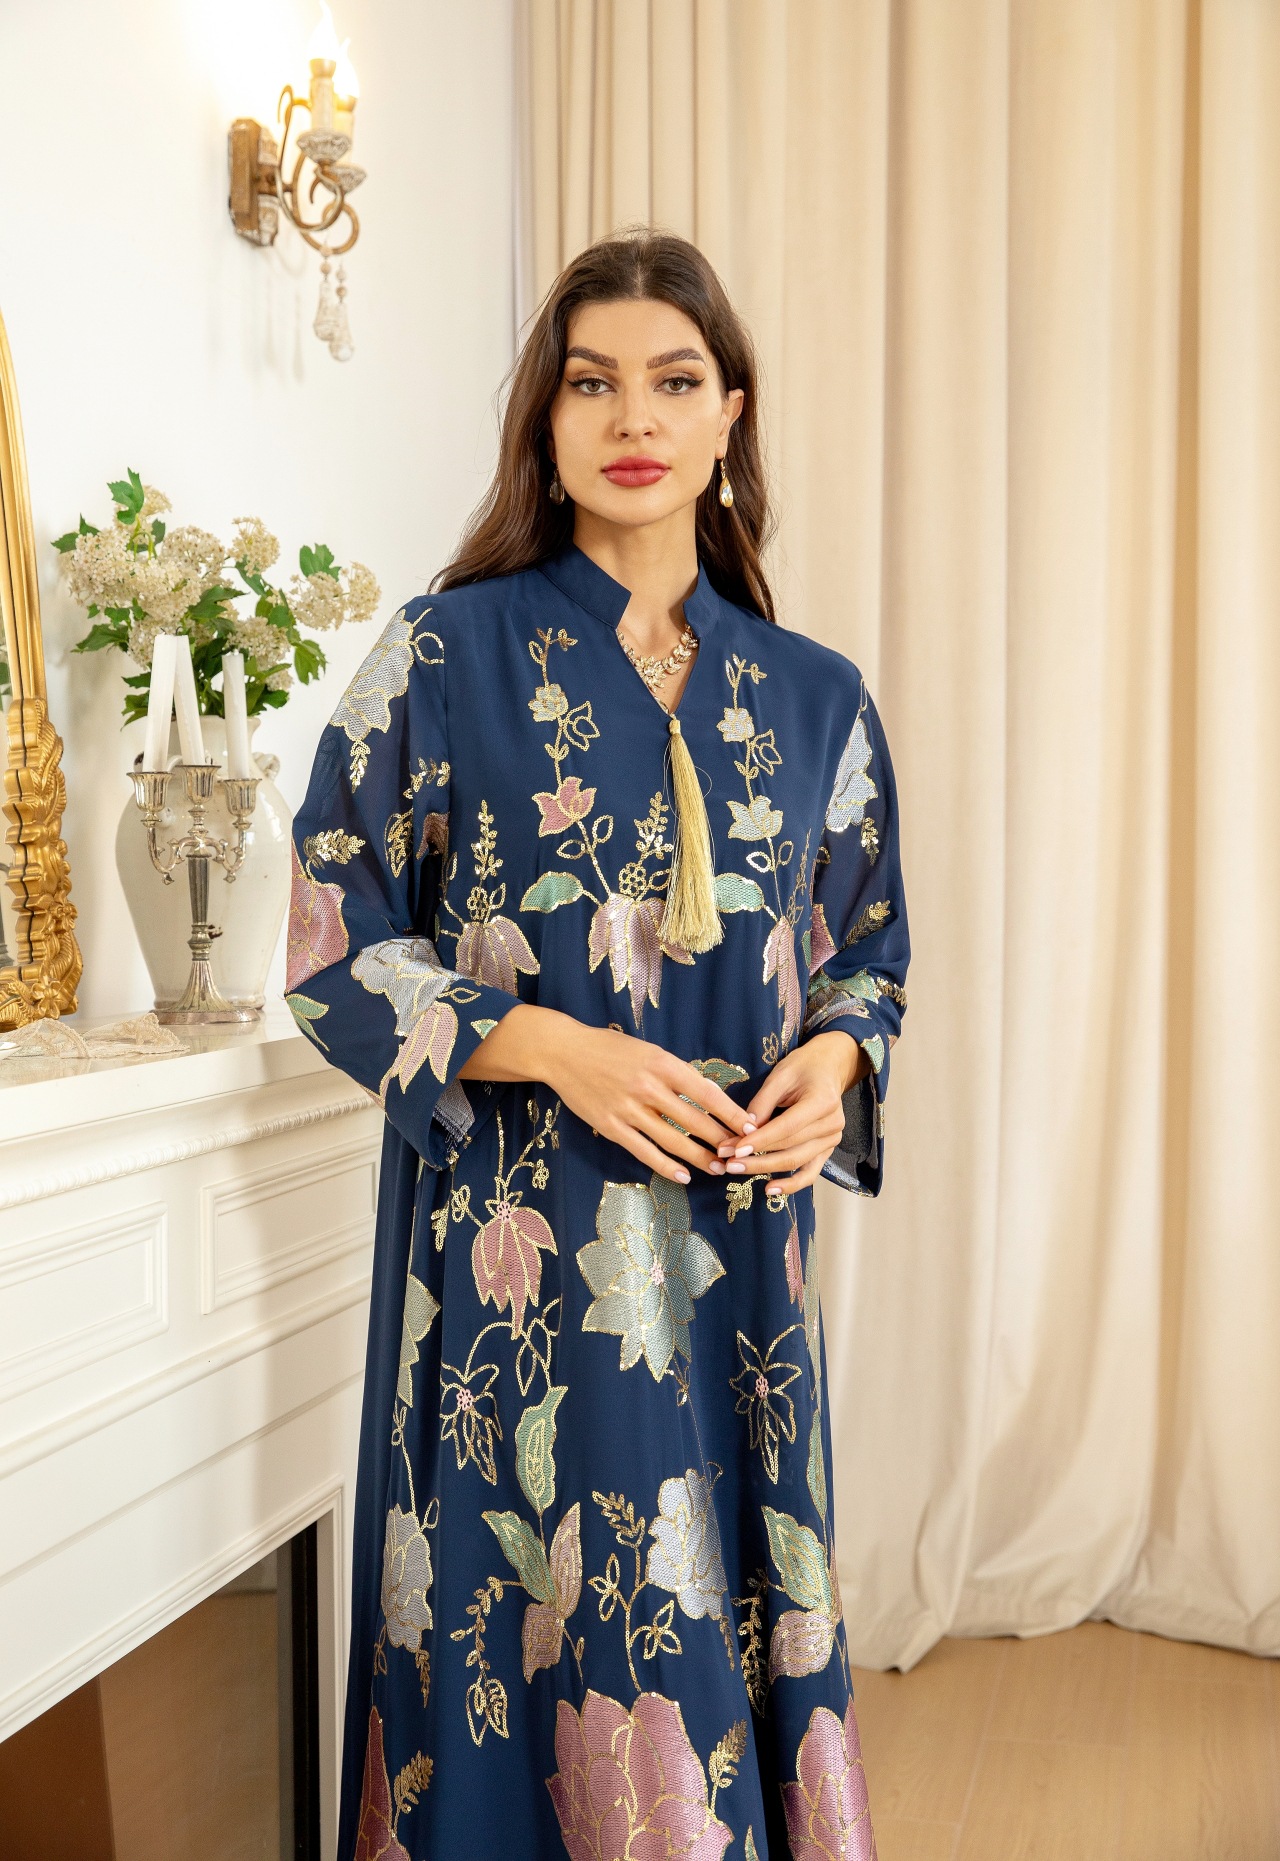 Charmiga paljetter Flower Mönster Kvinnor Kvällsklänning Dubai Robe Mellanöstern Abaya Ljus lyxiga långa ärmar Elegant festklänning Arabiska kläder